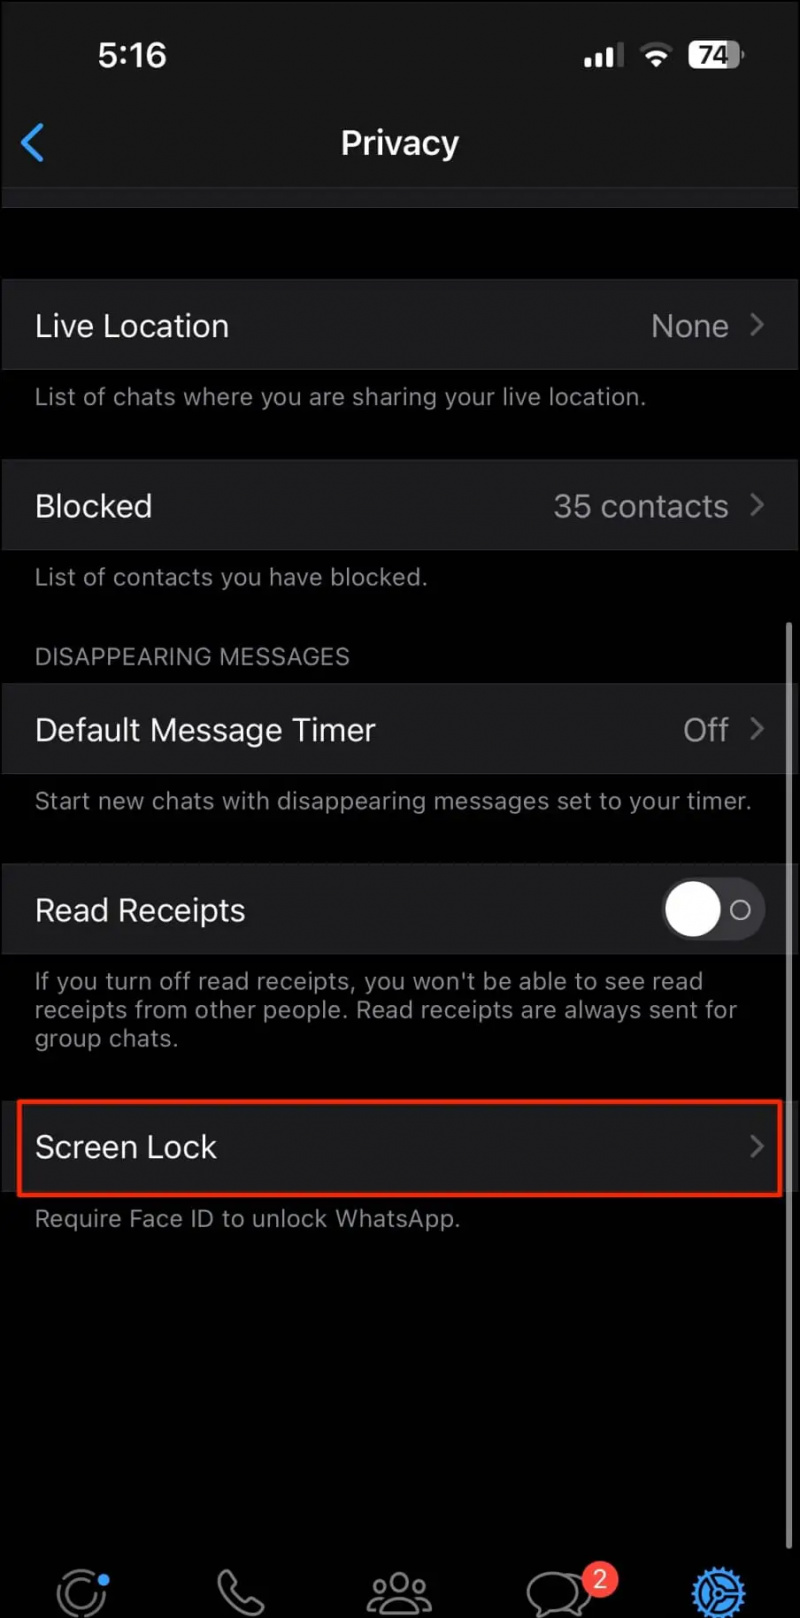   Zablokuj aplikację WhatsApp na iPhonie